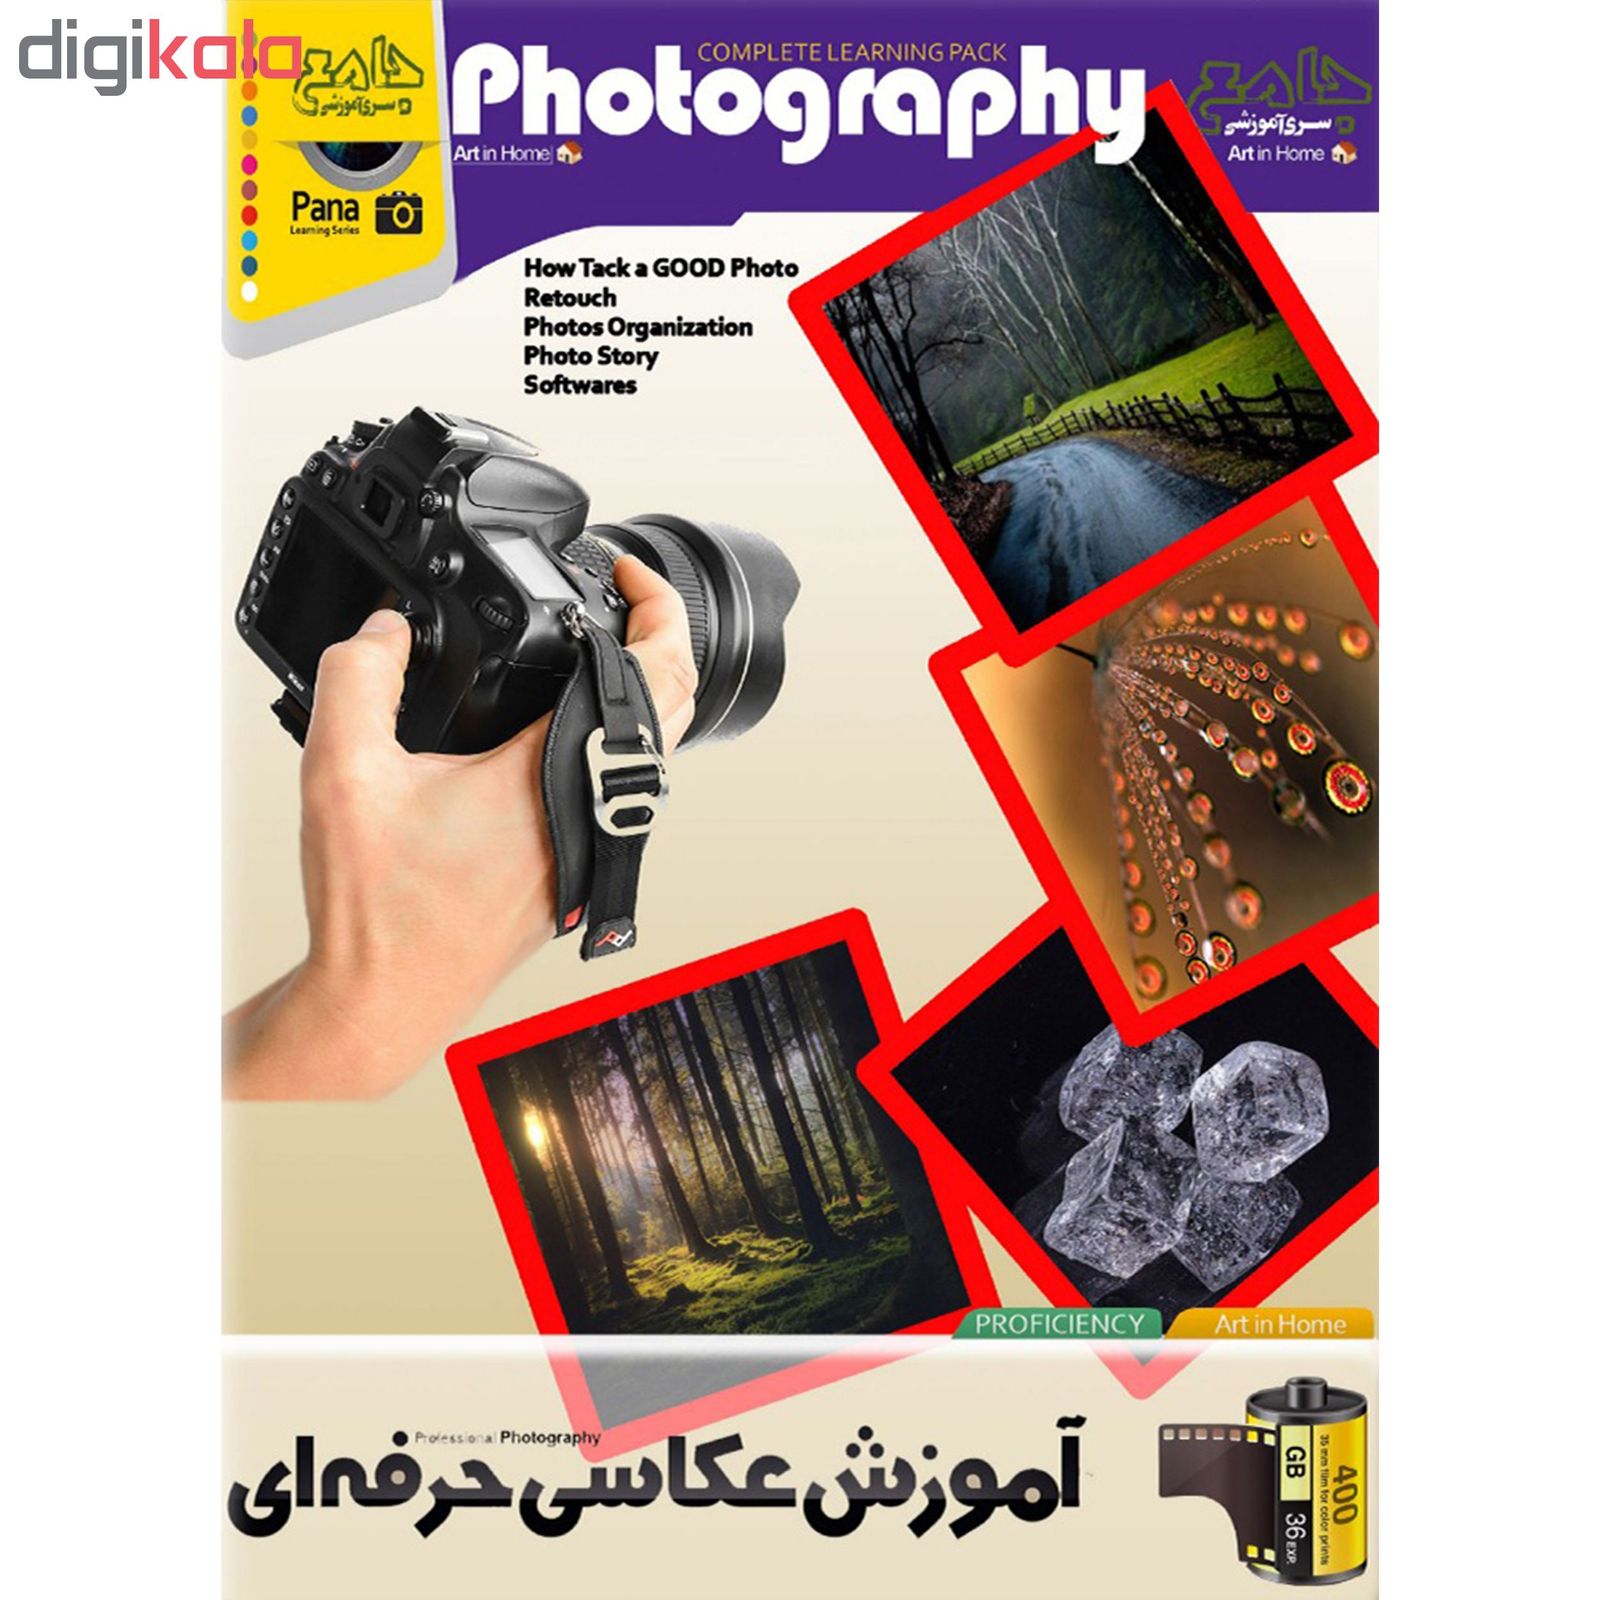 نرم افزار آموزش عکاسی حرفه ای نشر موسسه فرهنگی دیجیتال پاناپرداز آریا